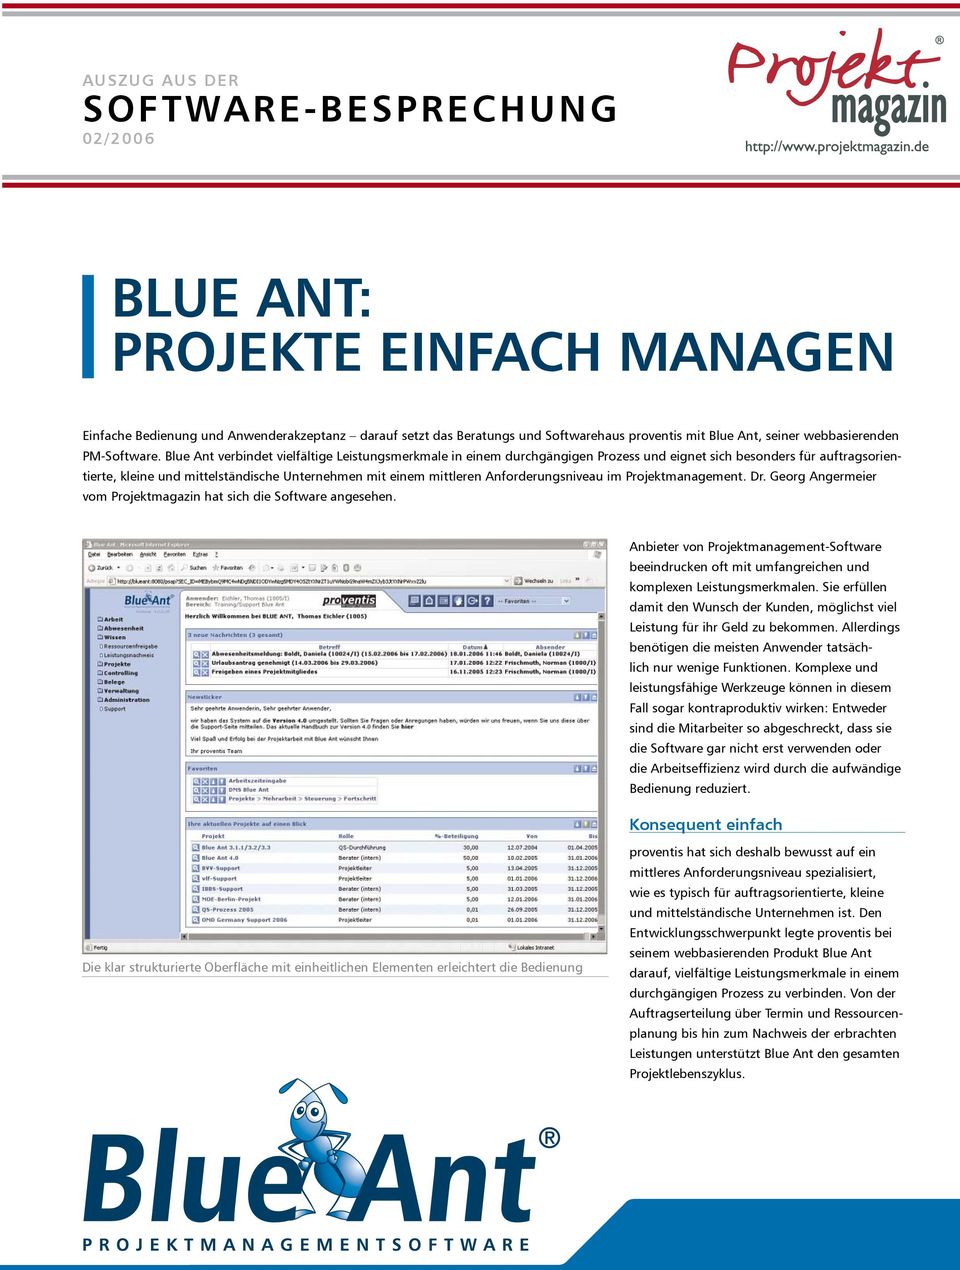 Blue Ant verbindet vielfältige Leistungsmerkmale in einem durchgängigen Prozess und eignet sich besonders für auftragsorientierte, kleine und mittelständische Unternehmen mit einem mittleren